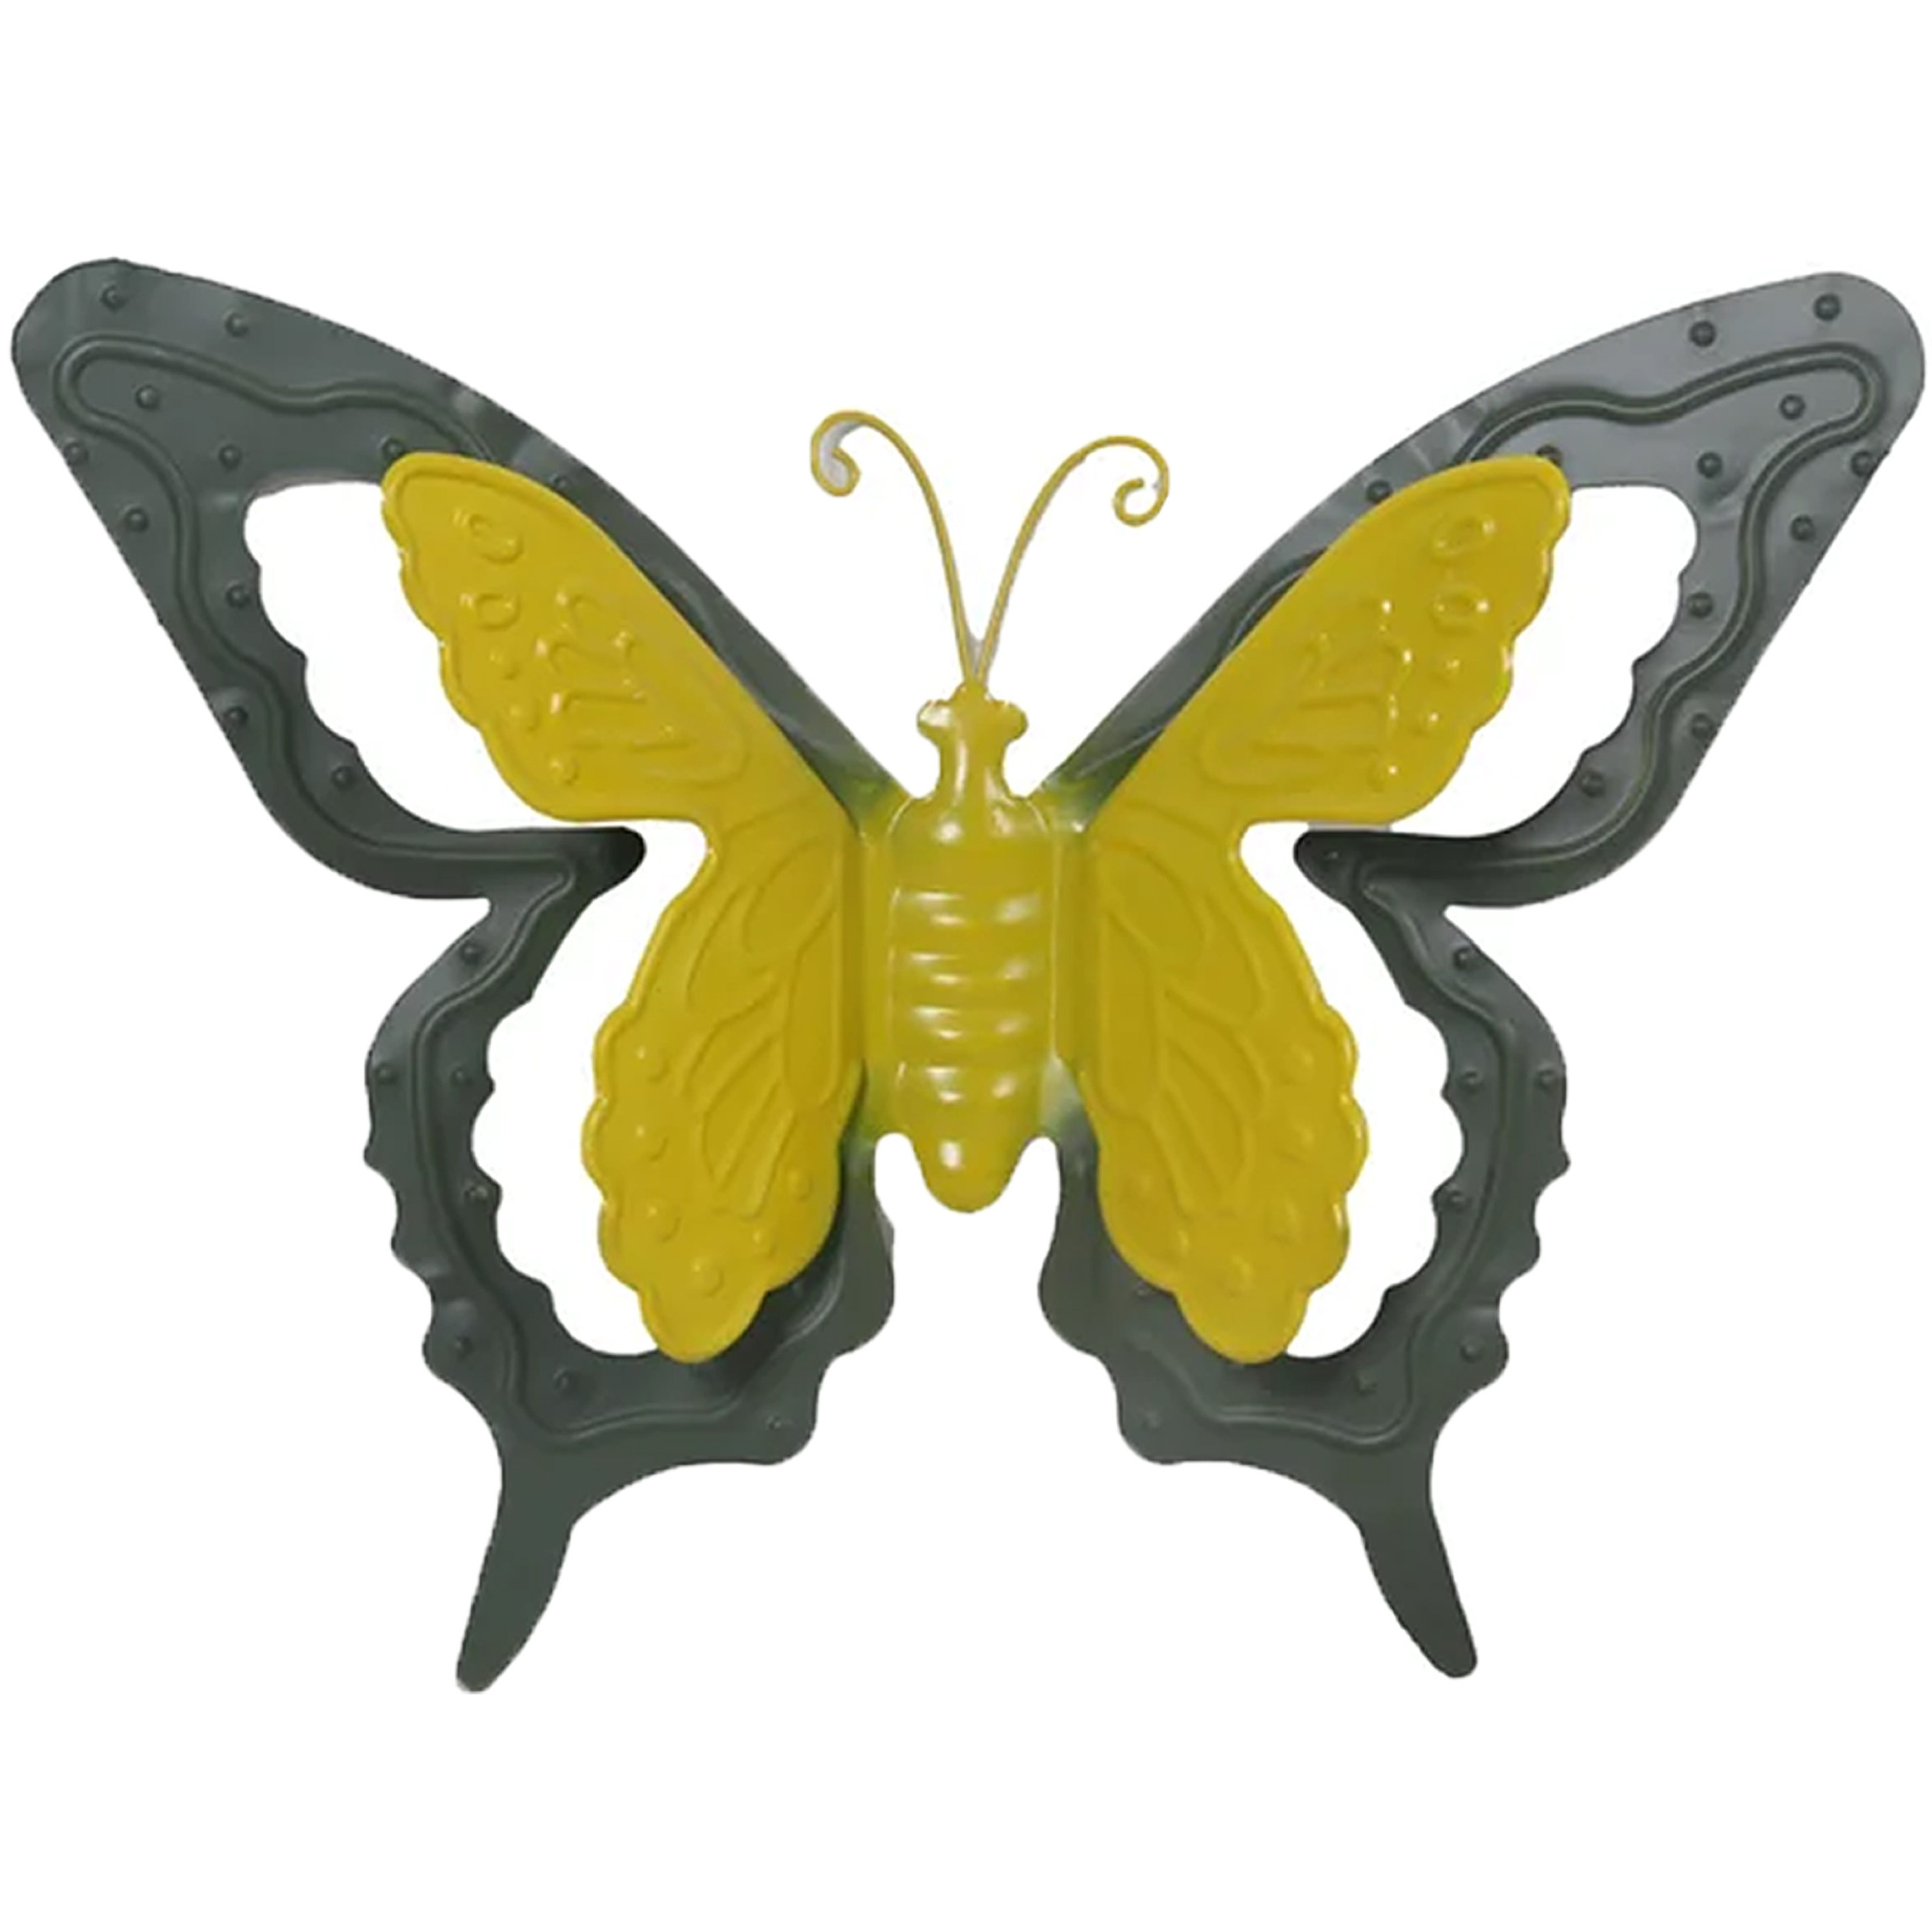 Tuin-schutting decoratie vlinder metaal groen 46 x 34 cm extra groot